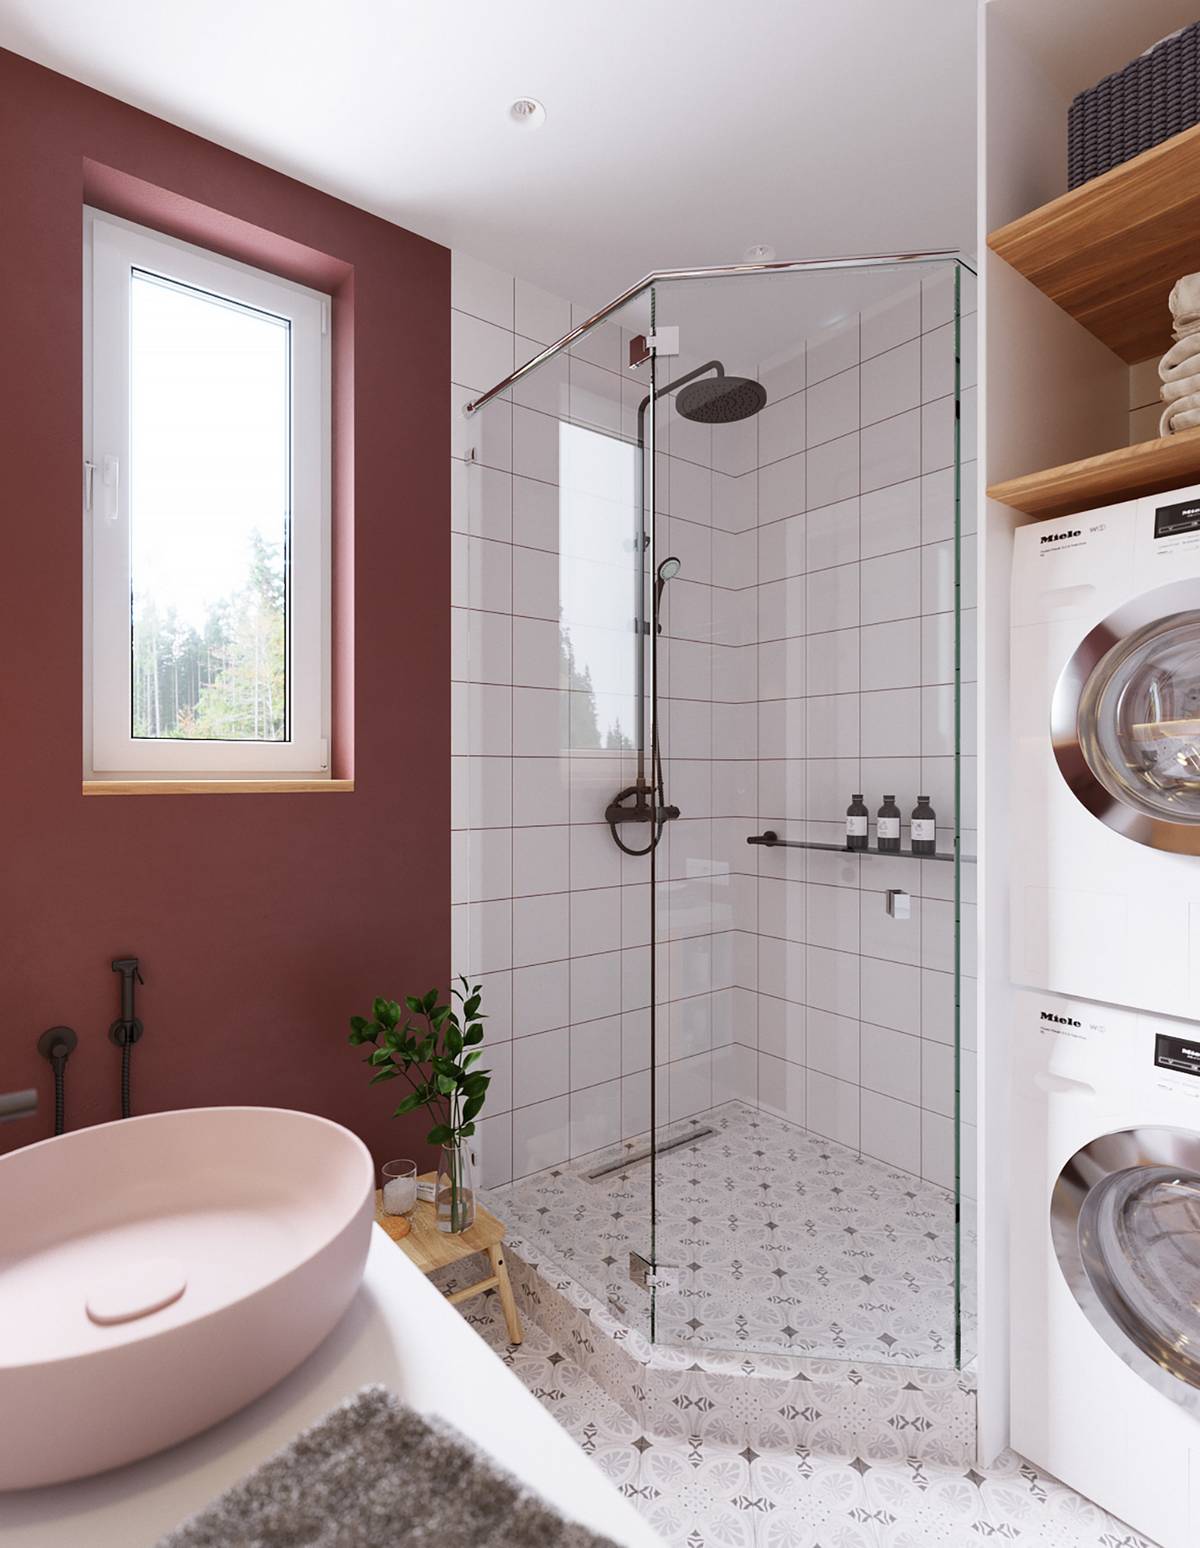 Phòng tắm là sự kết hợp của sơn tường màu đỏ tía thời trang, bồn rửa hồng pastel nhẹ nhàng, buồng tắm đứng ốp gạch men trắng, phân cách với toilet bằng cửa kính trong suốt.